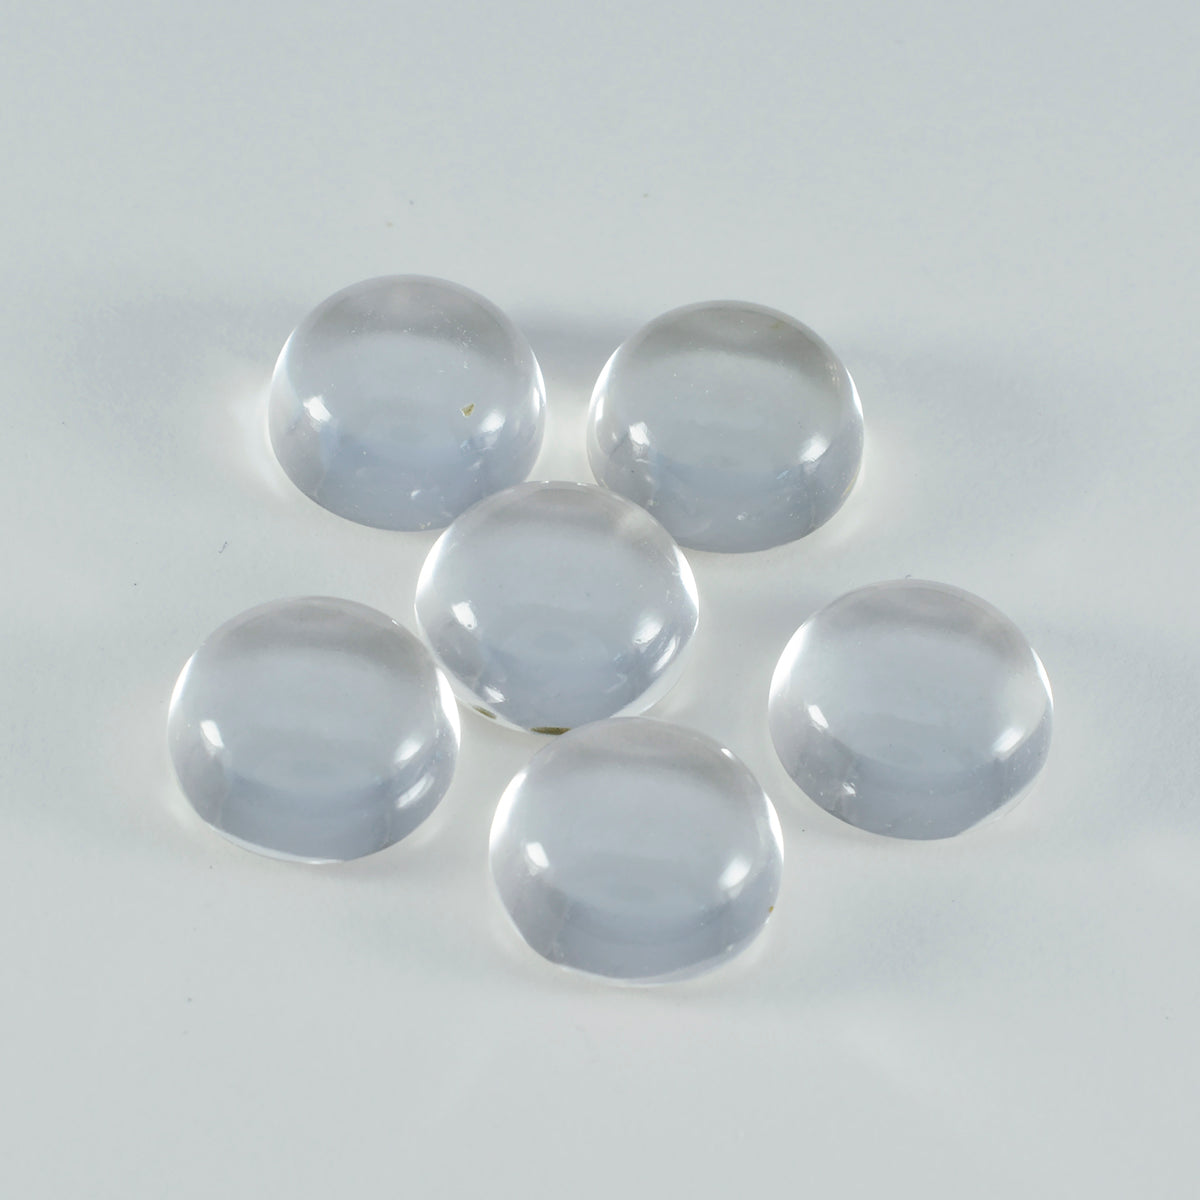 Riyogems – cabochon de quartz en cristal blanc, forme ronde, pierre précieuse de belle qualité, 10x10mm, 1 pièce